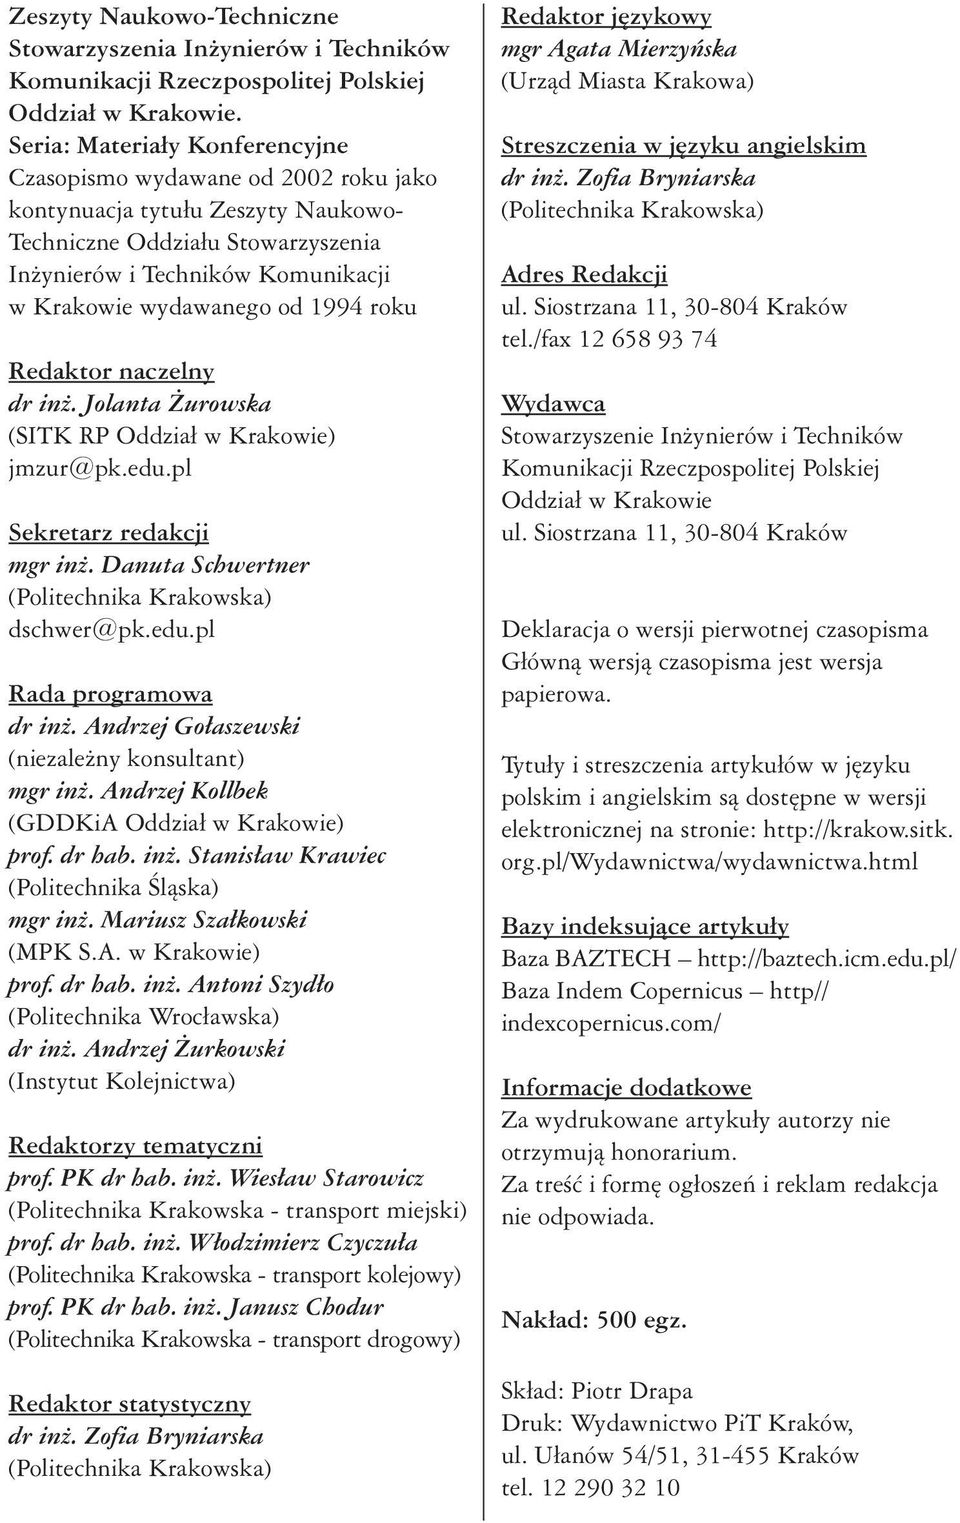 1994 roku Redaktor naczelny dr in. Jolanta urowska (SITK RP Oddzia w Krakowie) jmzur@pk.edu.pl Sekretarz redakcji mgr in. Danuta Schwertner (Politechnika Krakowska) dschwer@pk.edu.pl Rada programowa dr in.